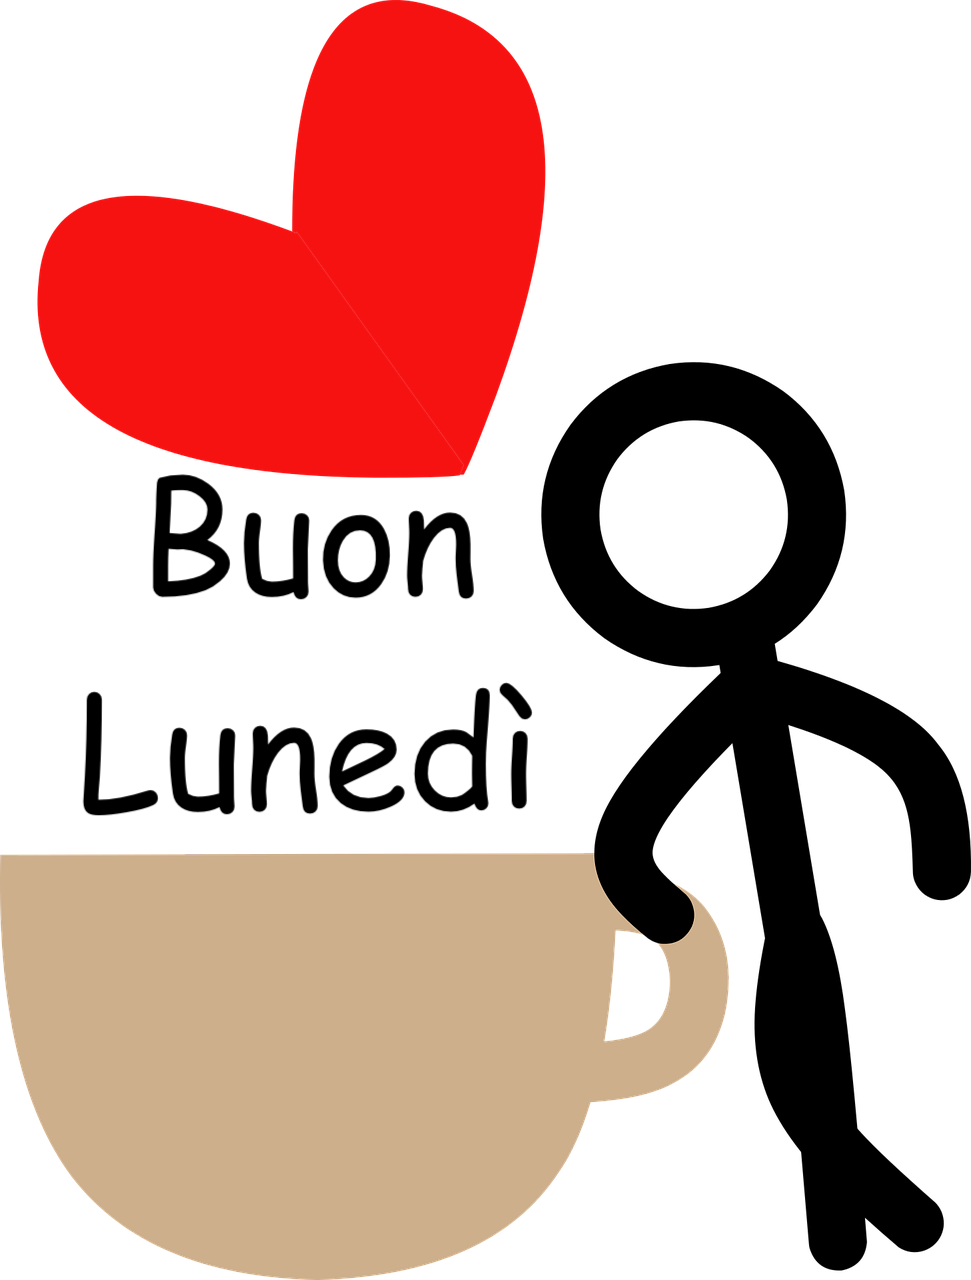 immagine stilizzata con un cuoricino e un essere umano vicino a una tazza di caffè 